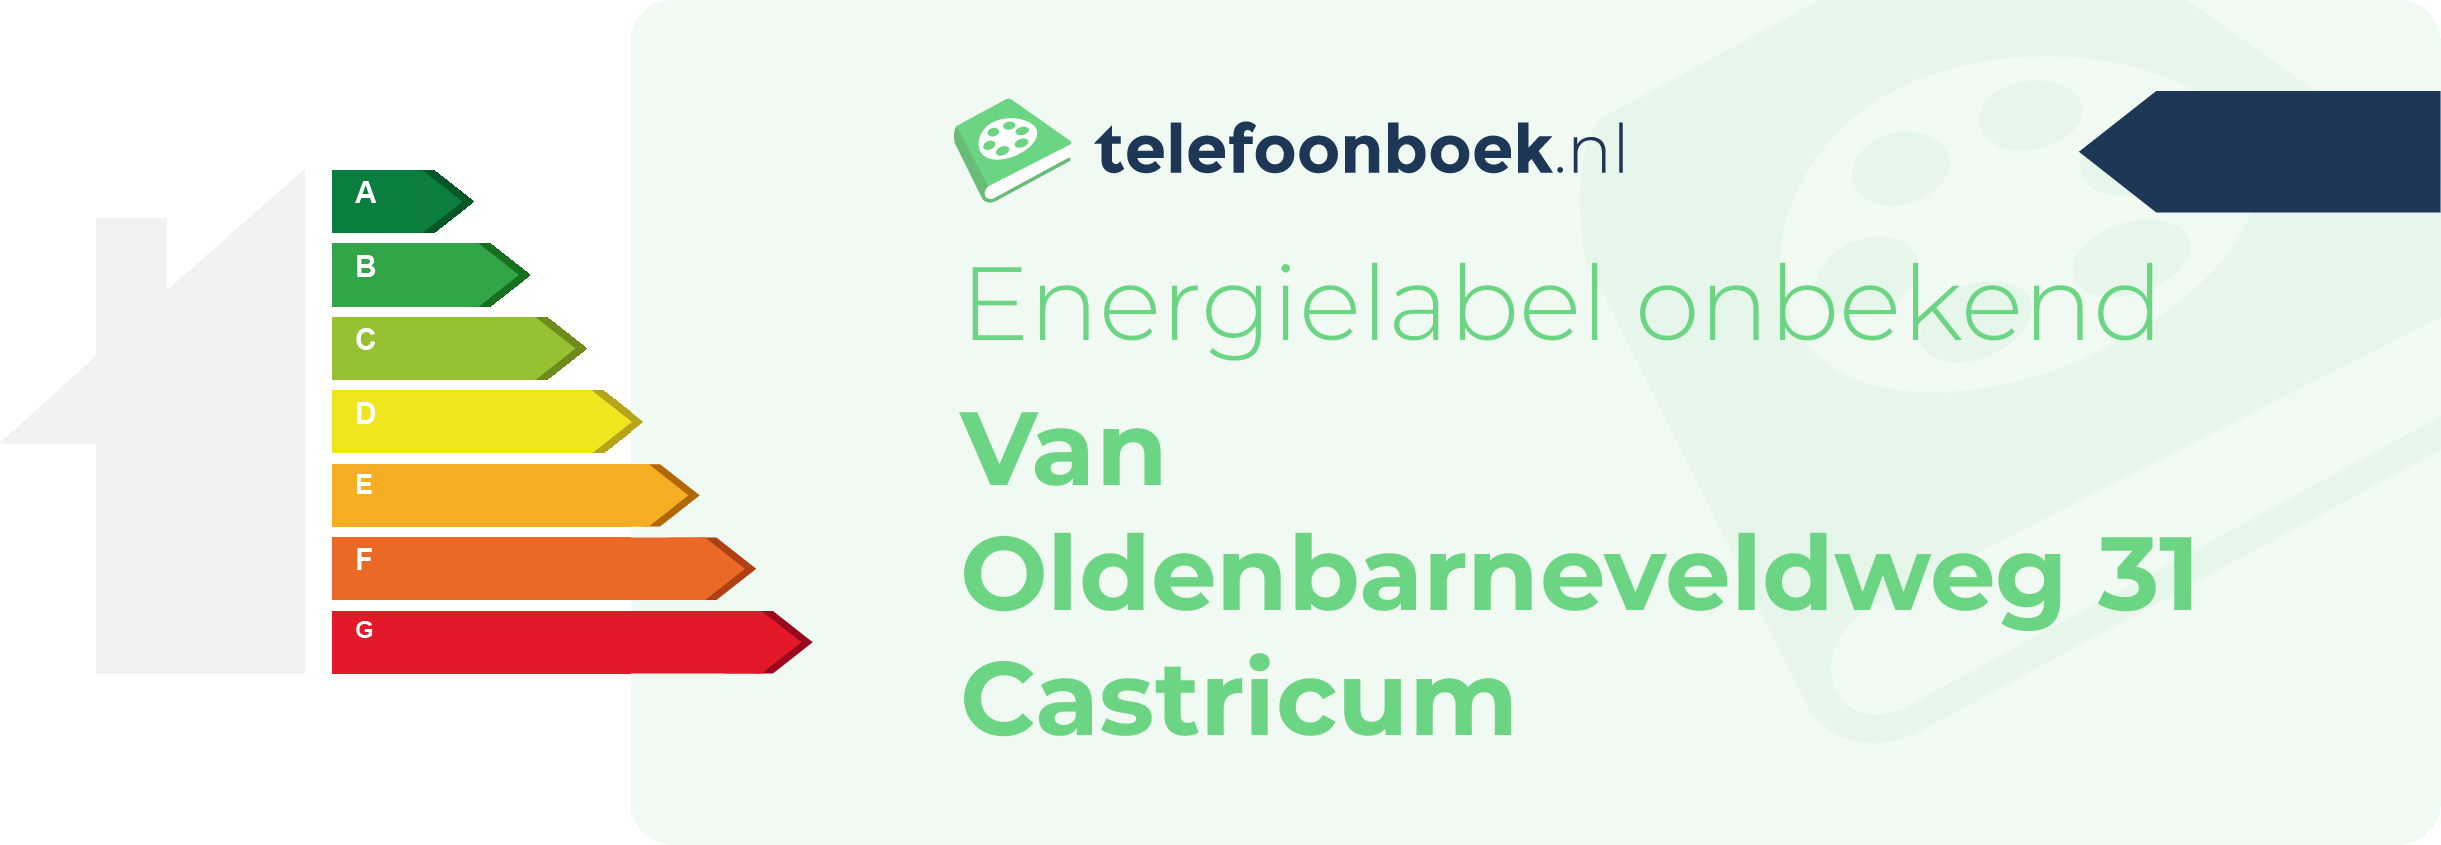 Energielabel Van Oldenbarneveldweg 31 Castricum